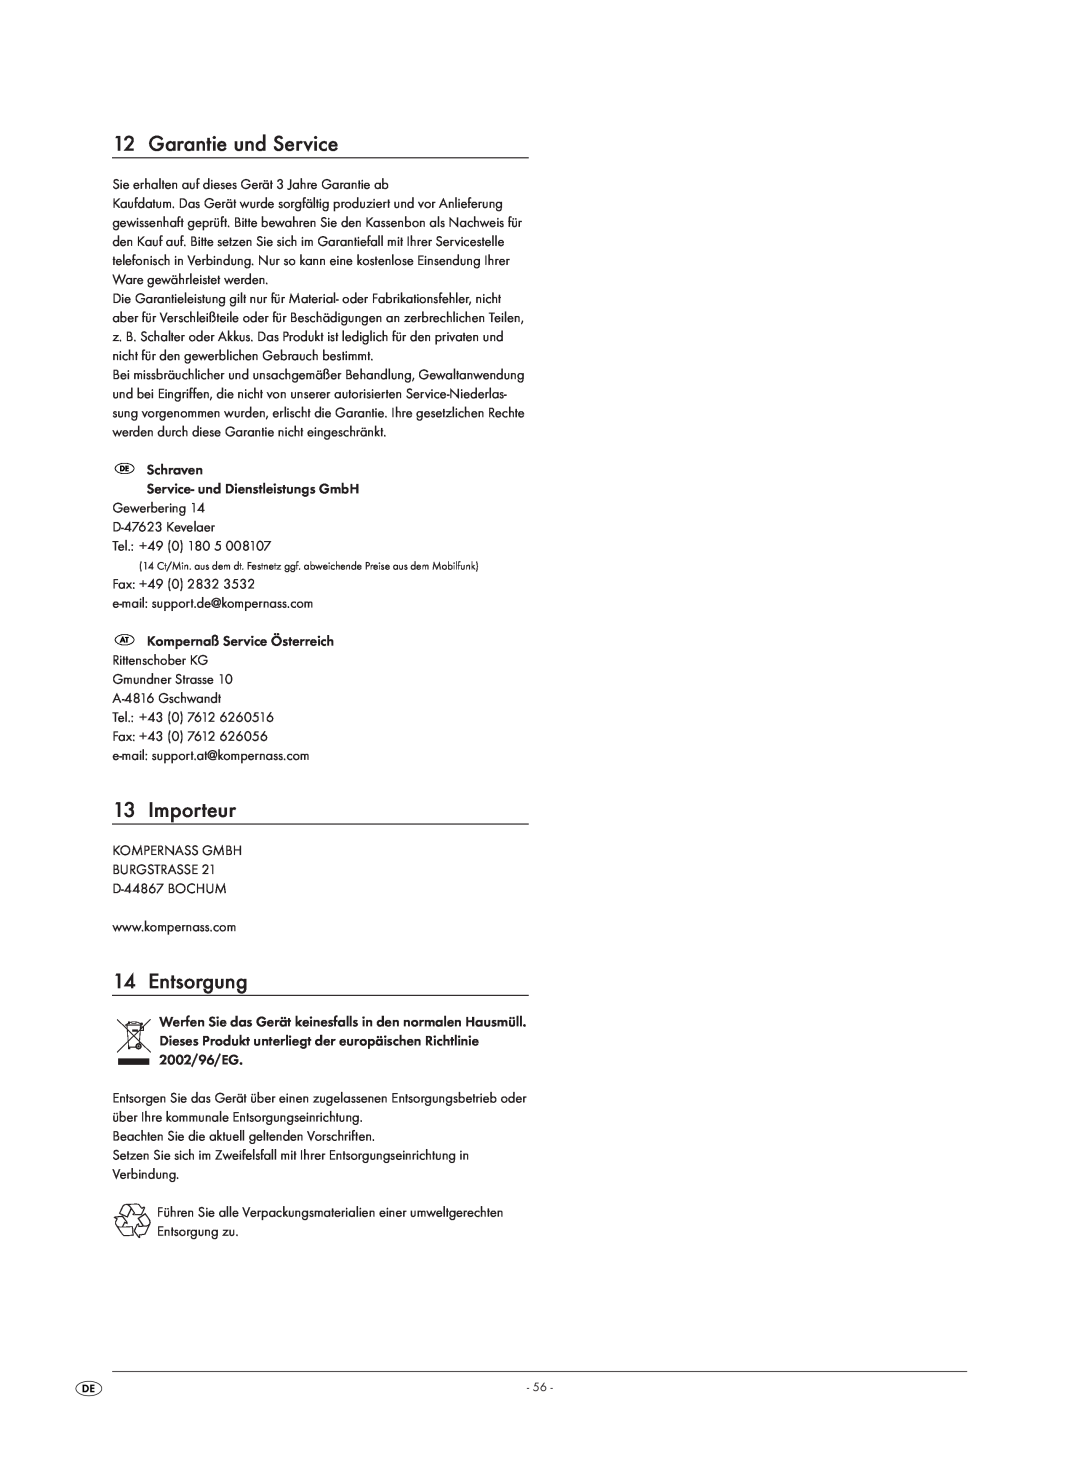 Kompernass KH 1150 manual Importeur, Entsorgung, Garantie und Service 